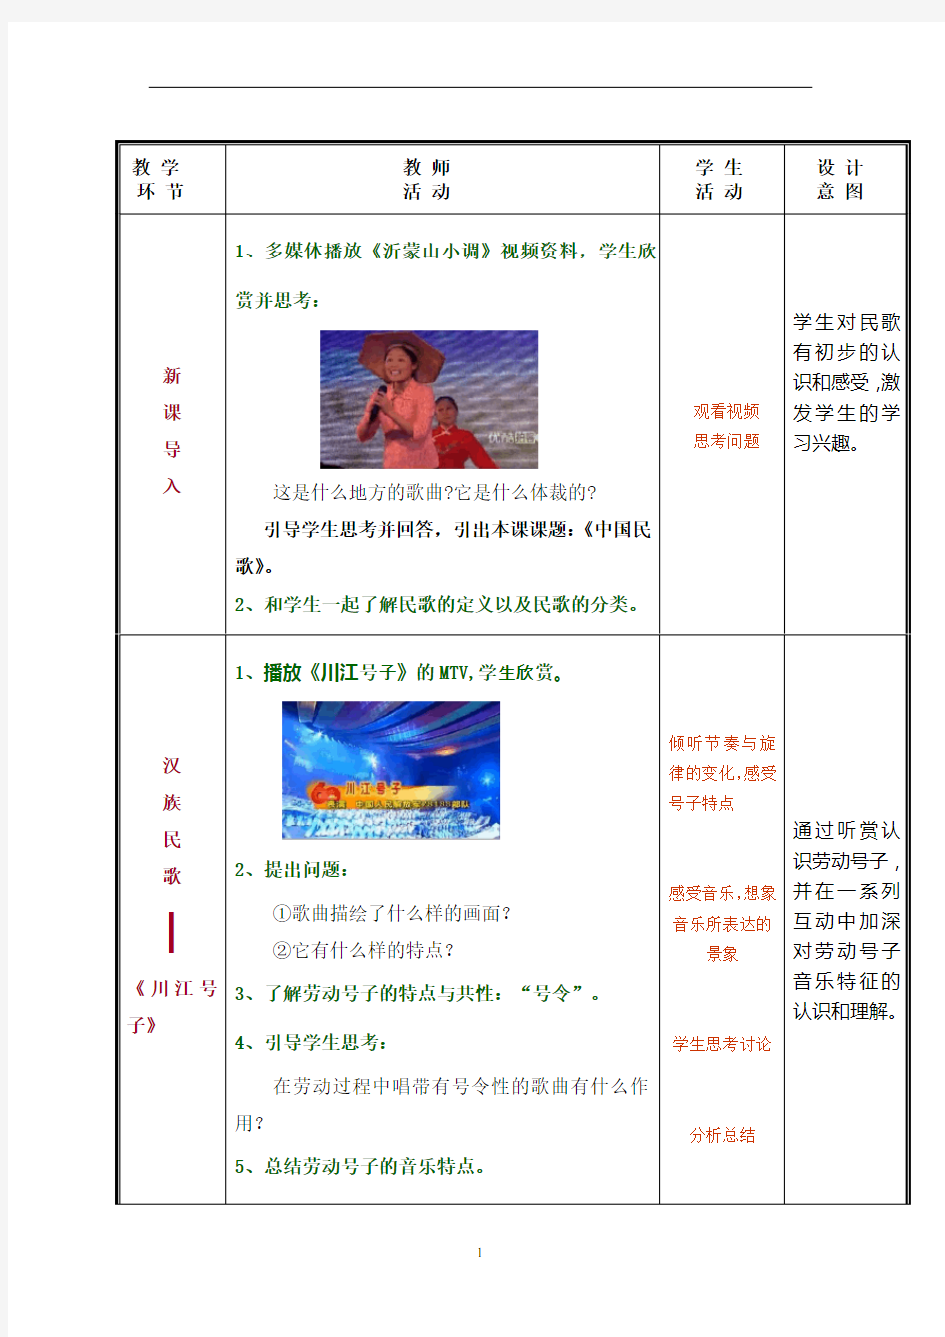 公共艺术(音乐篇)教学设计--中国民歌